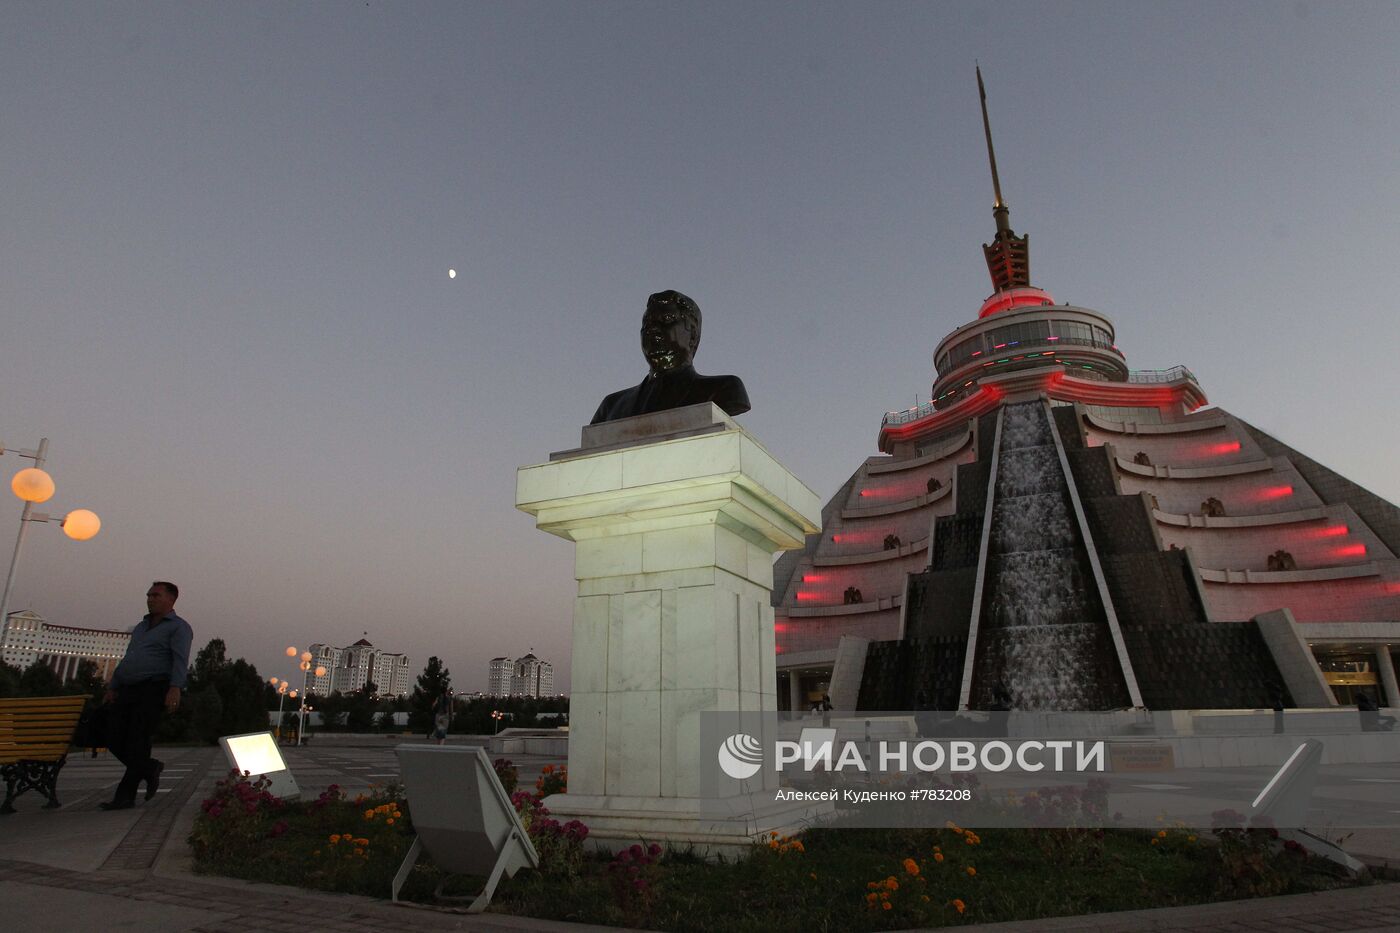 Памятник Туркменбаши в столице Туркменистана Ашхабаде